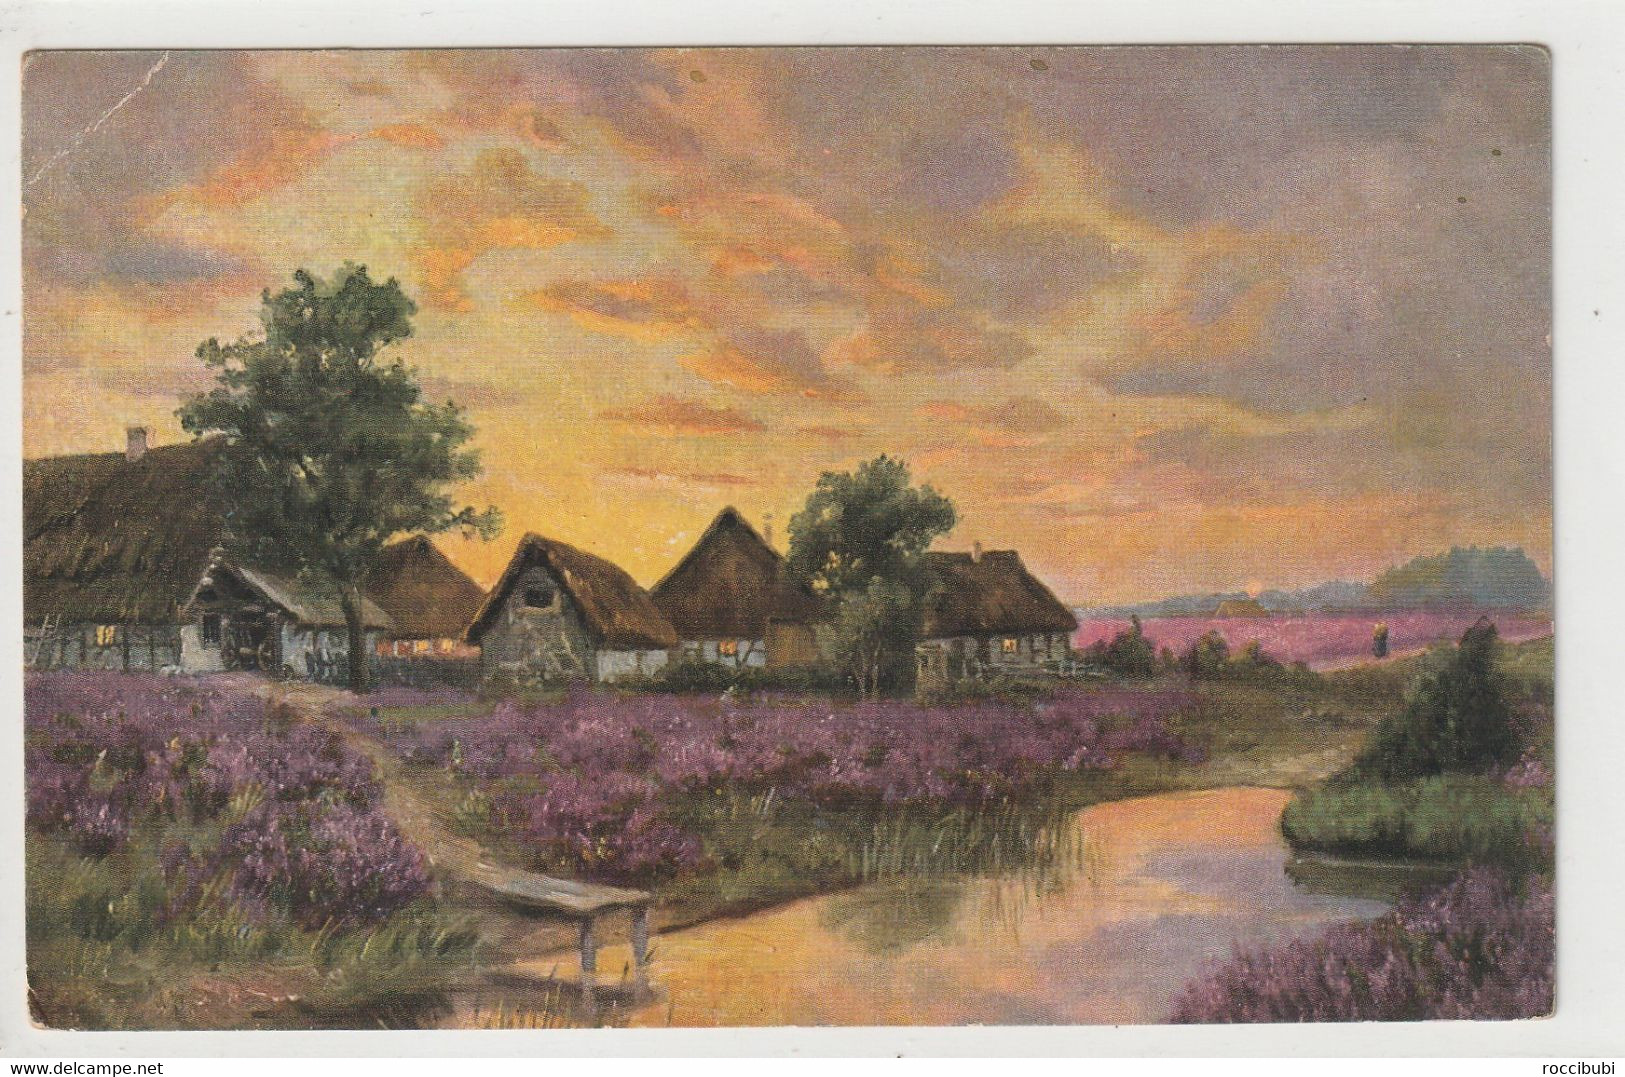 Lüneburger Heide - Lüneburger Heide